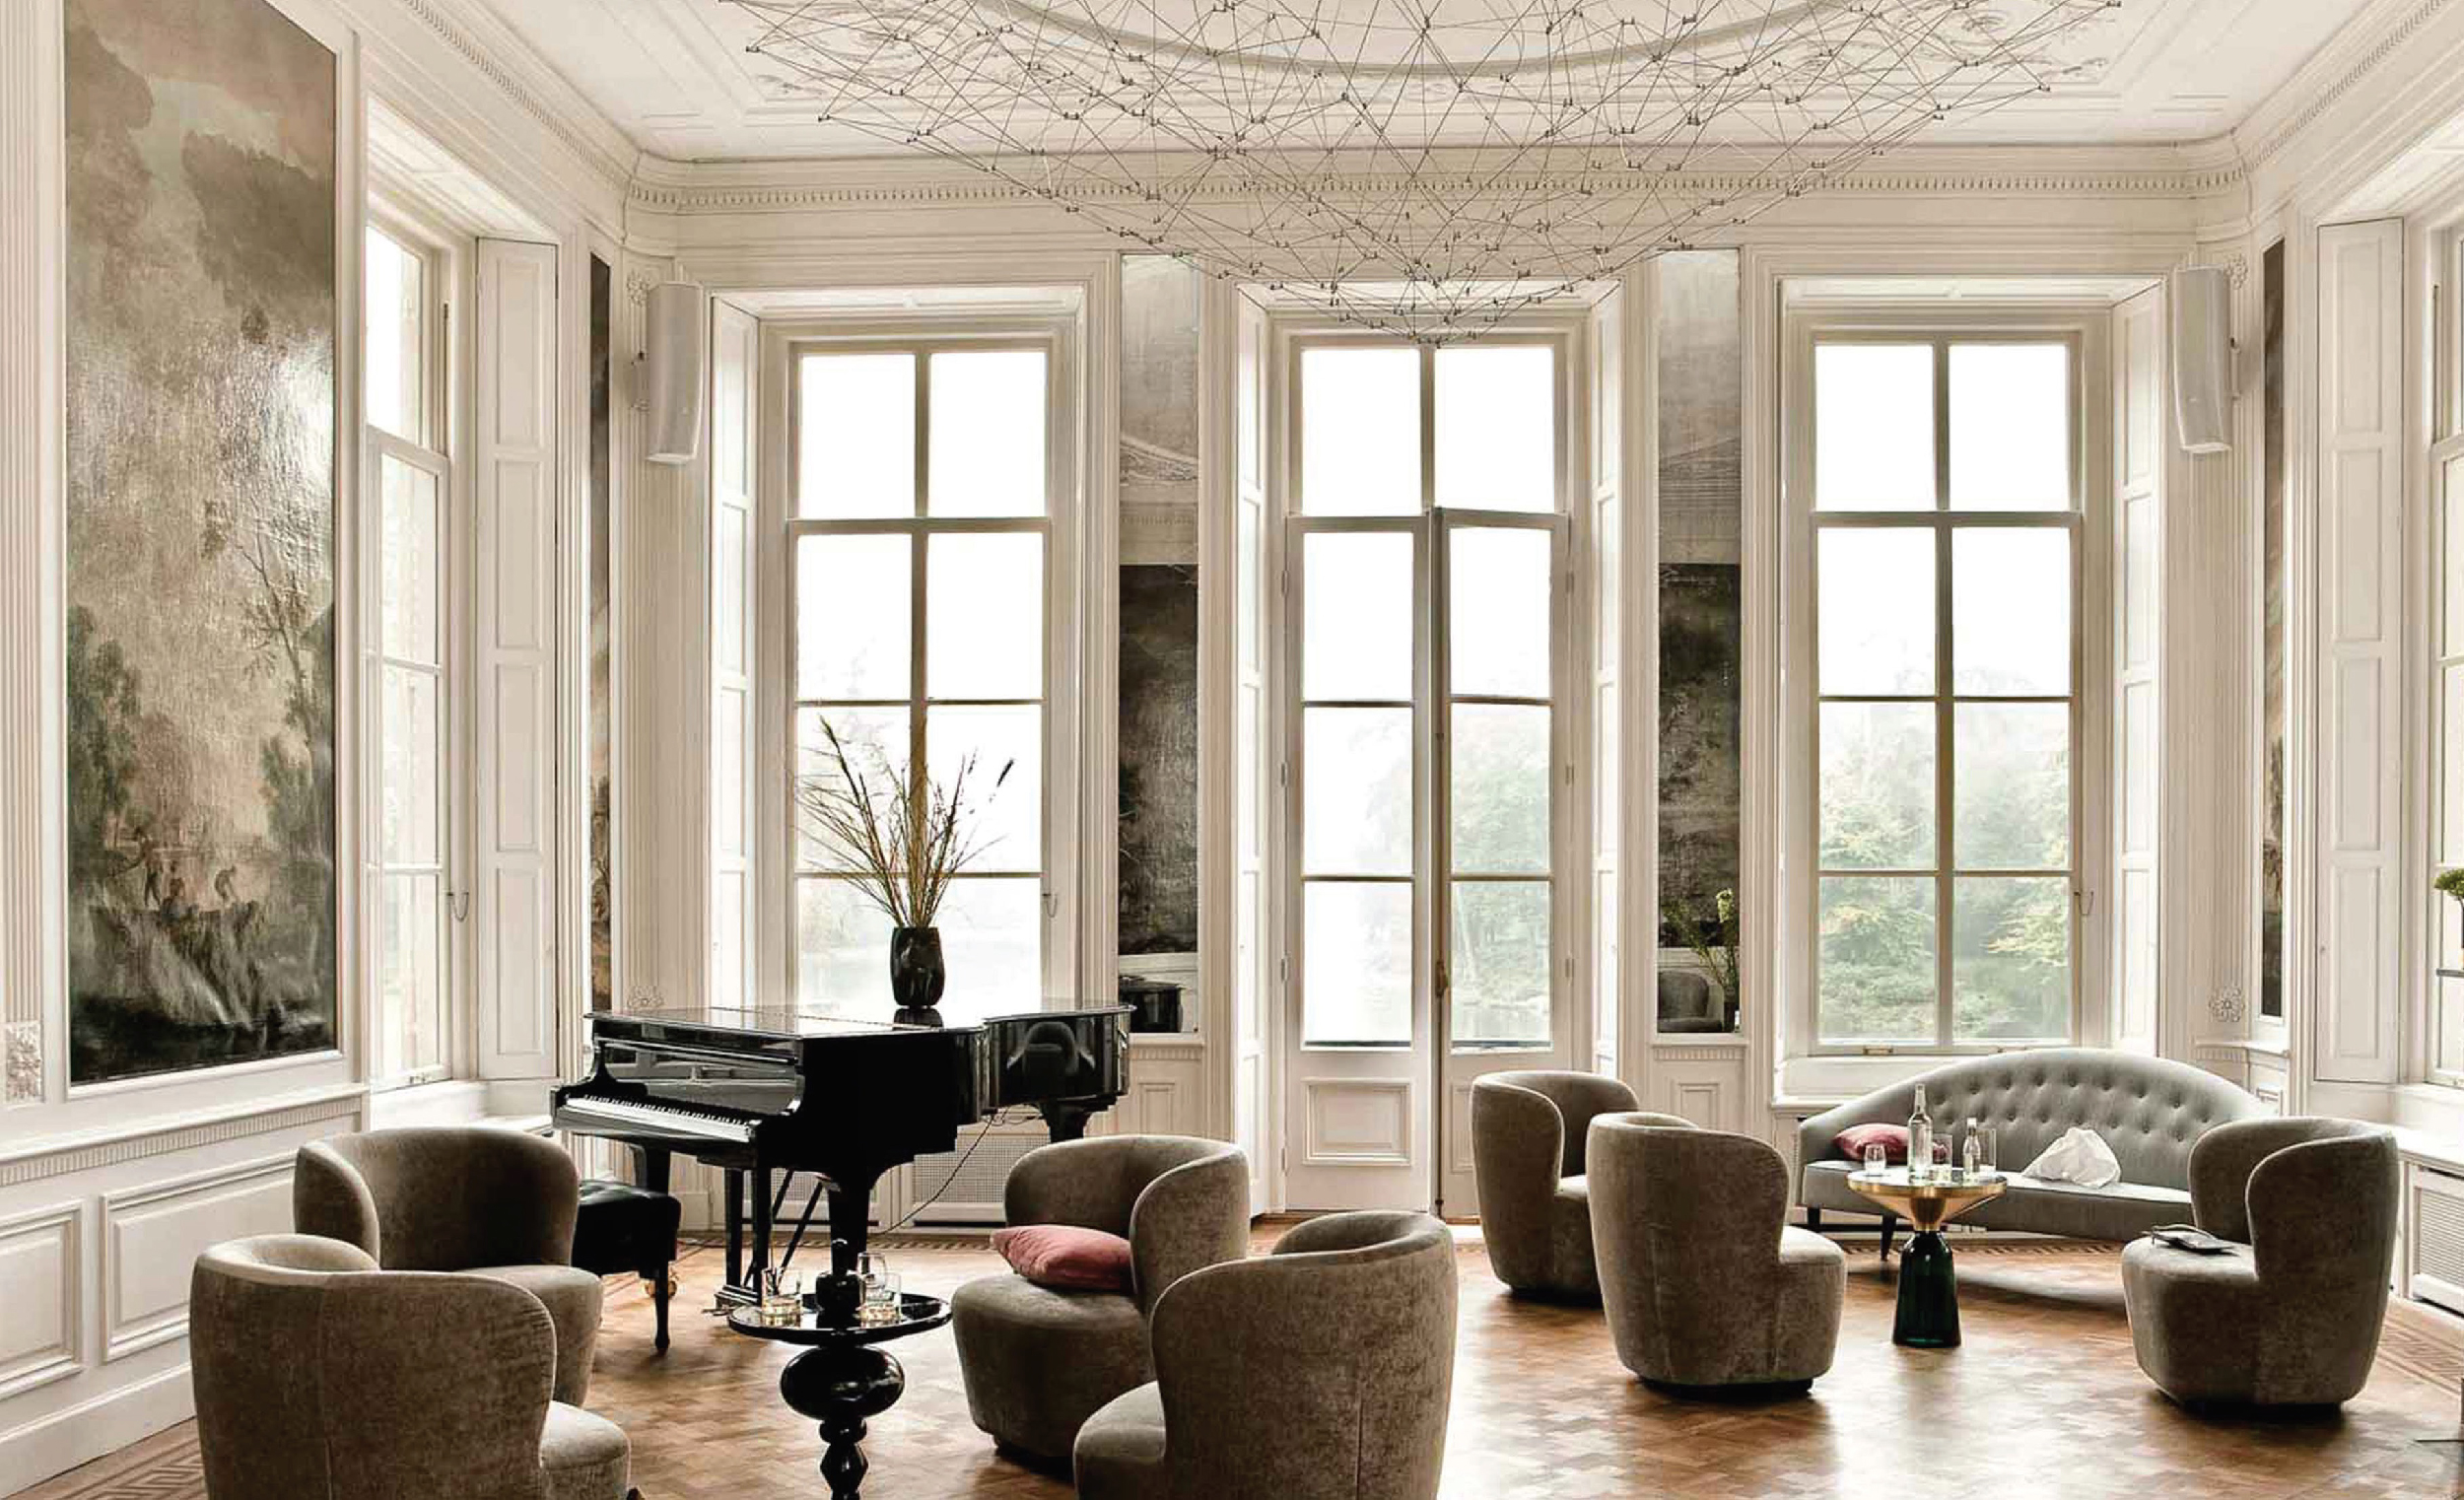 Salono salėje pūpsantis fortepijonas byloja apie čia vykstančius nuostabių muzikos garsų pripildytus jaukius ir elegantiškus vakarus